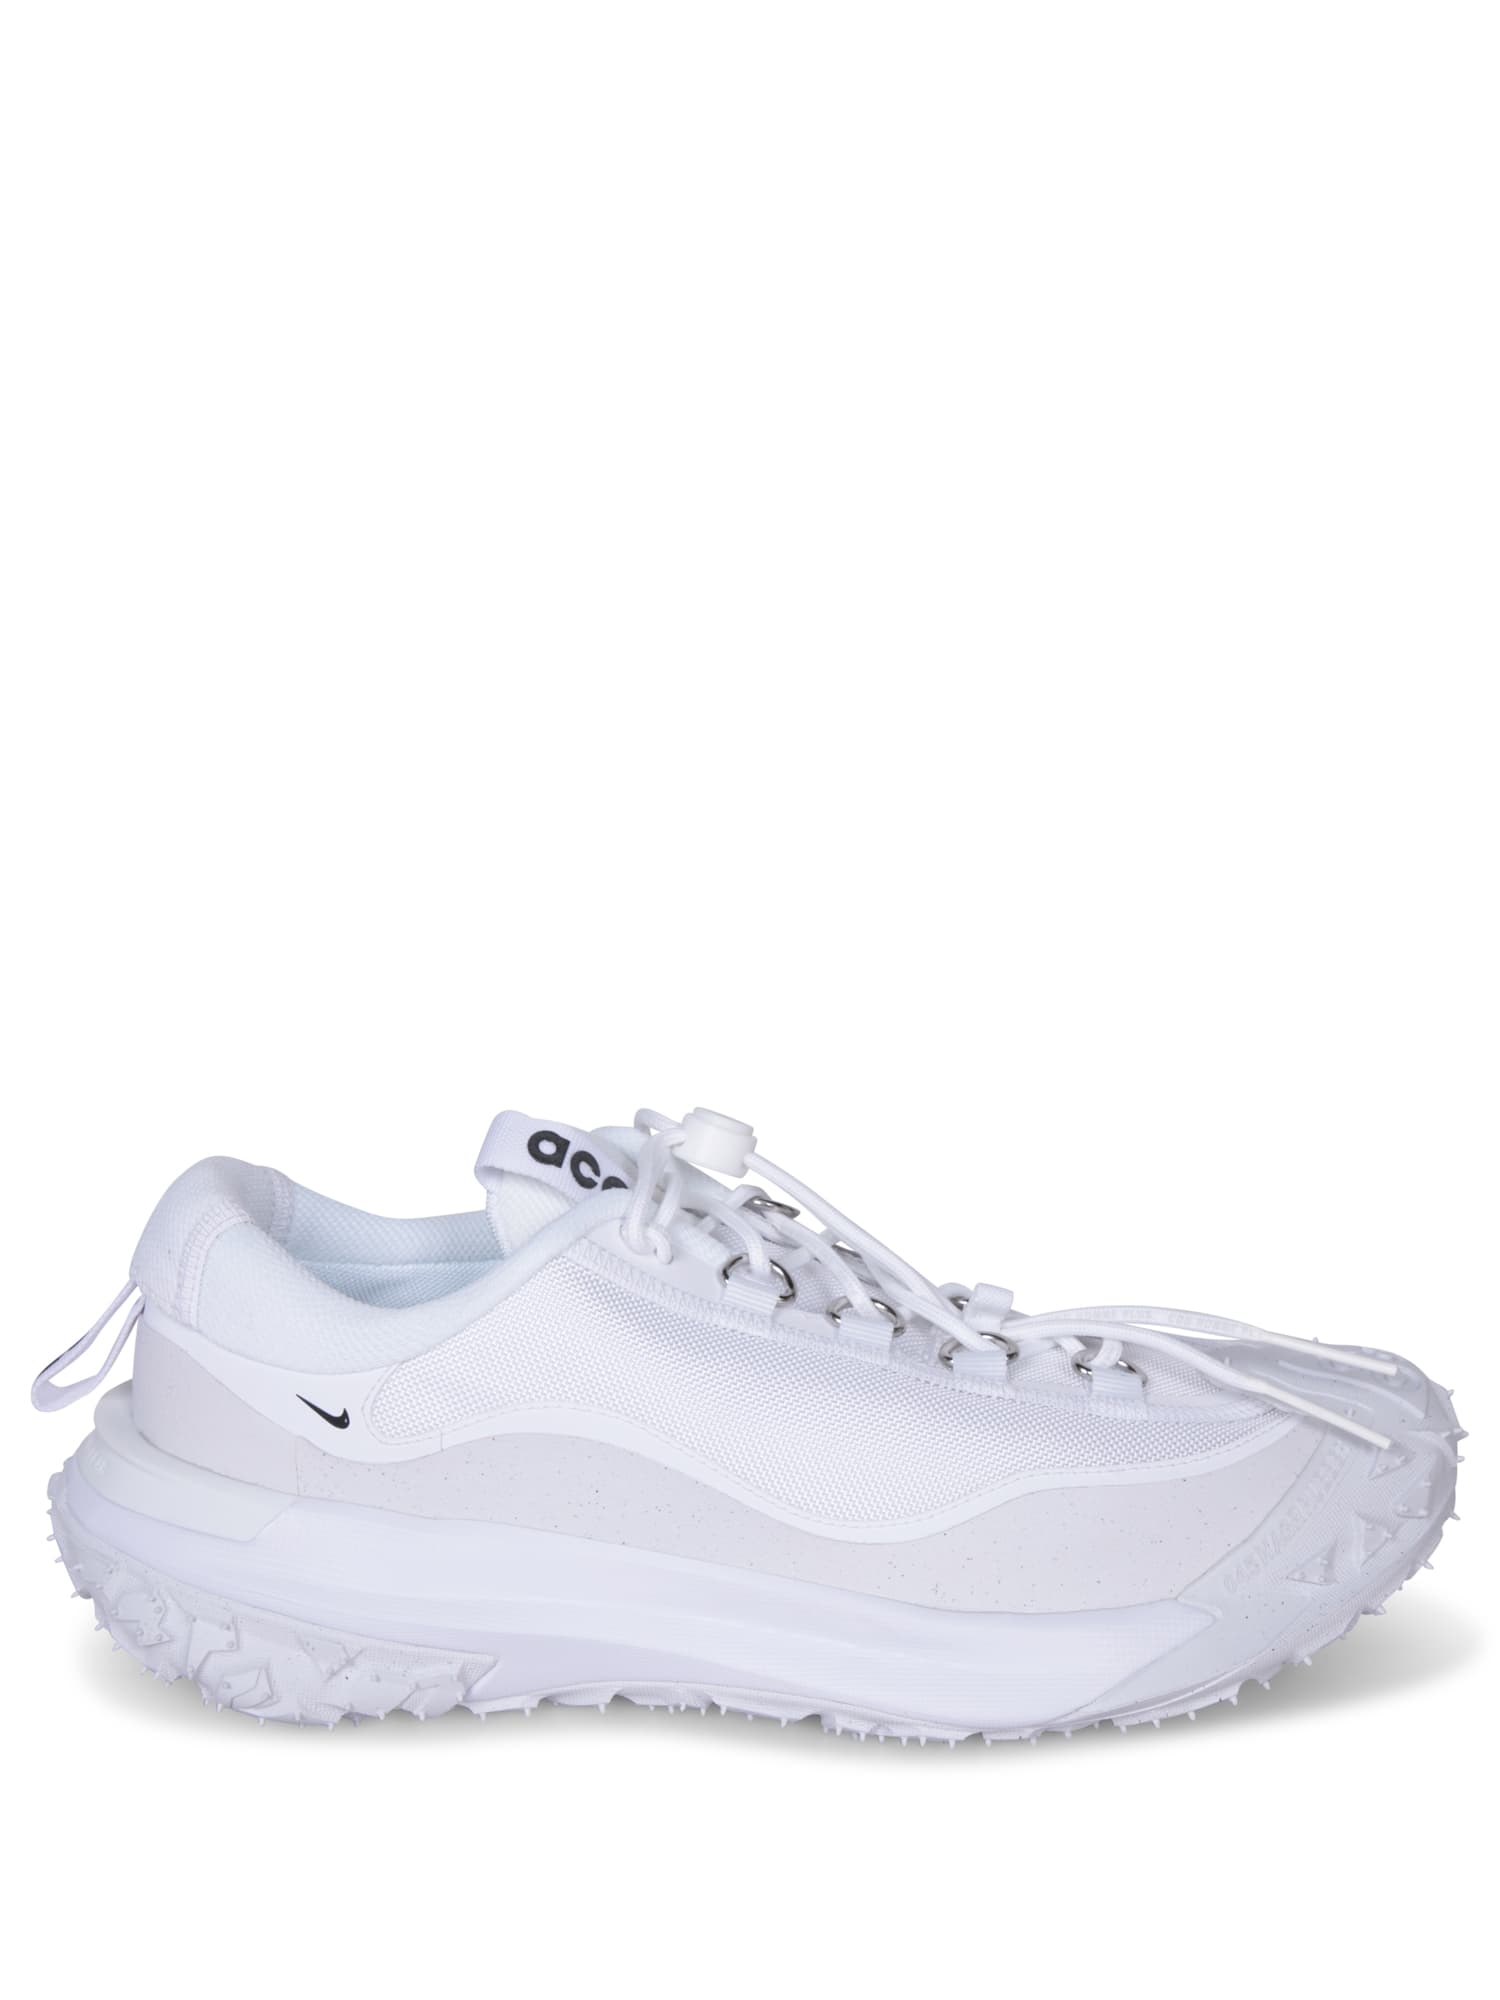 Acg Mountain White Sneakers